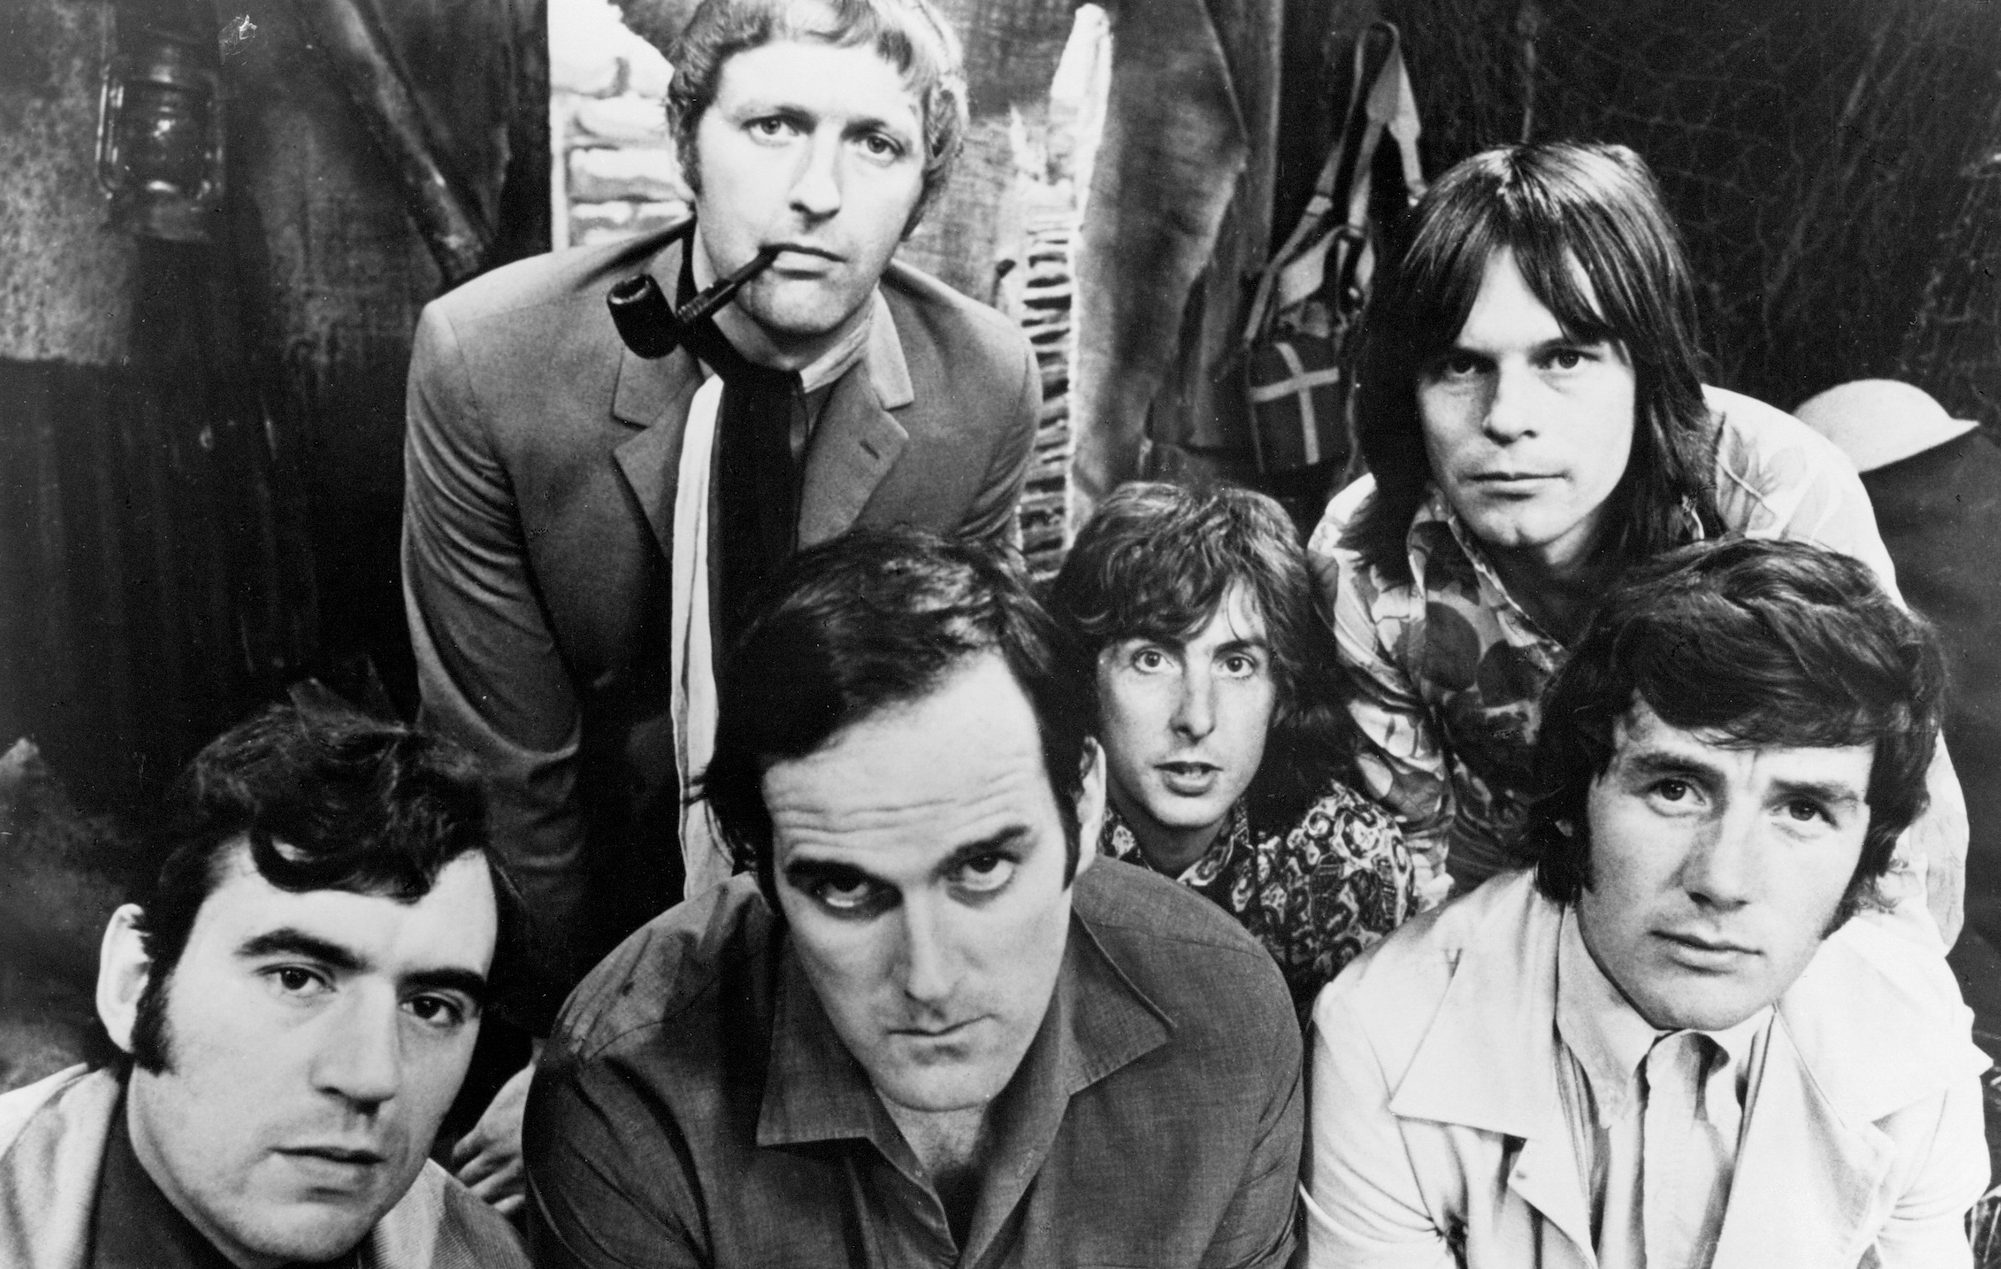 Terry Jones arrojó una máquina de escribir a John Cleese durante la pelea de los Monty Python, según Sir Michael Palin